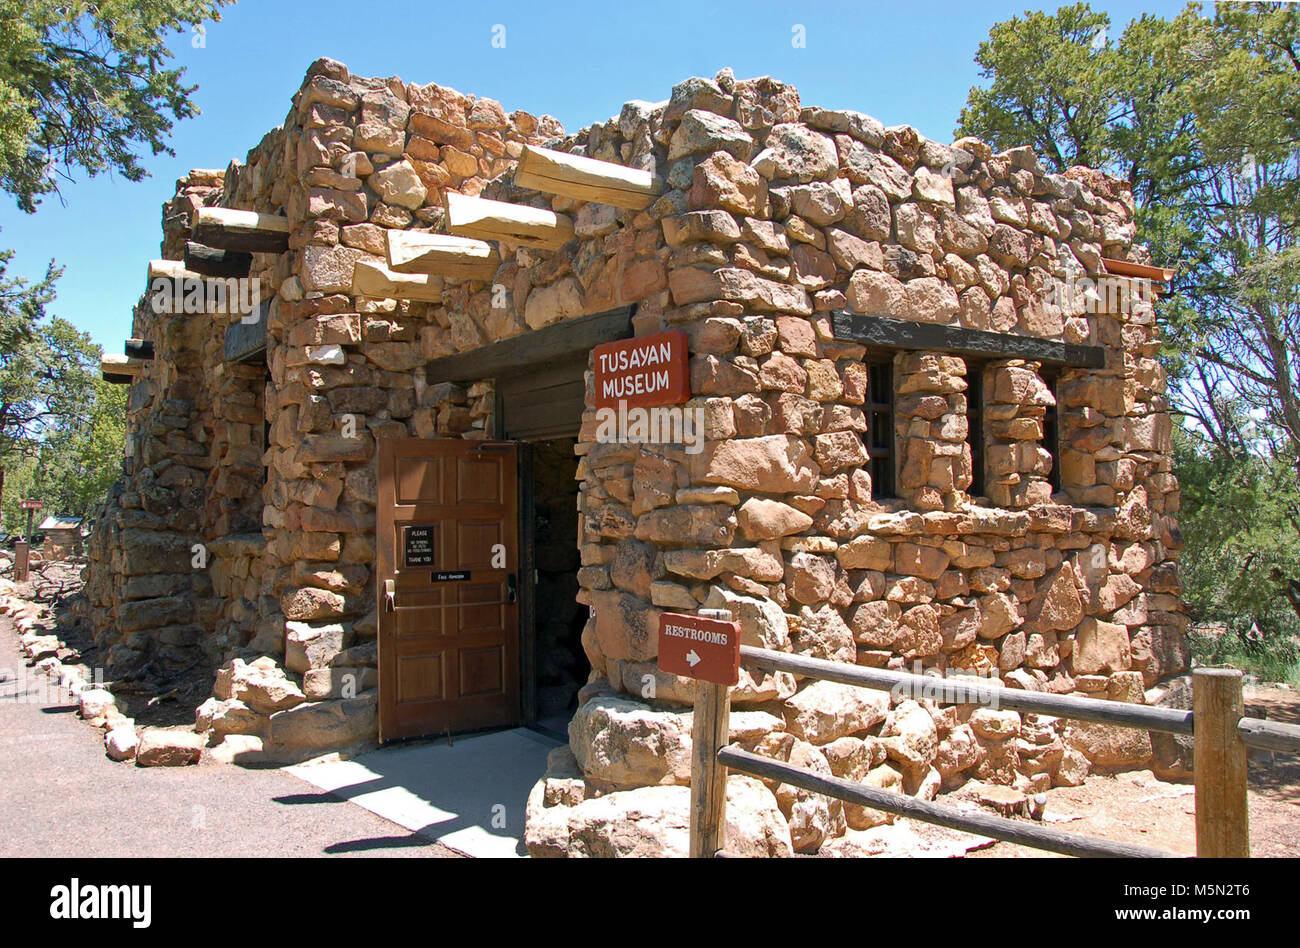 Le Parc National du Grand Canyon Tusayan Museum . Une visite à Tusayan Museum donne un aperçu de la vie des Indiens Pueblo à Grand Canyon certains il y a 800 ans. L'entrée est libre. C'était une communauté prospère comme en témoignent ses poteries, pointes de flèches et autres objets ménagers. Le Musée Tusayan est ouvert tous les jours de 9:00 à 5:00, et est situé à 3 miles (5 km) à l'ouest de Desert View. Entrée libre. Sont également indiquées ici repres Banque D'Images